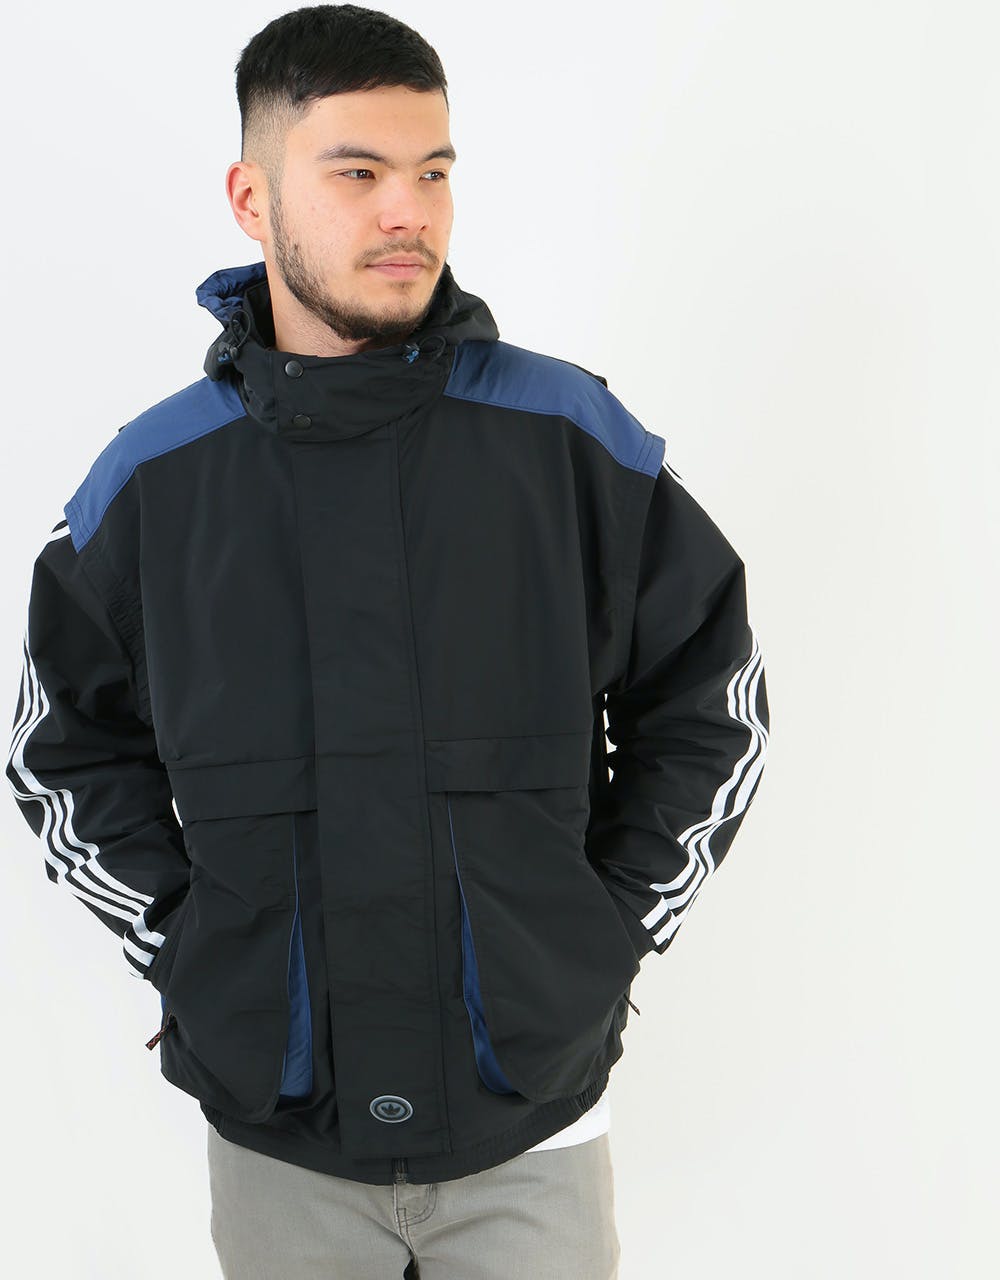 Adidas Blackrock Jacket - Black/Tech Indigo